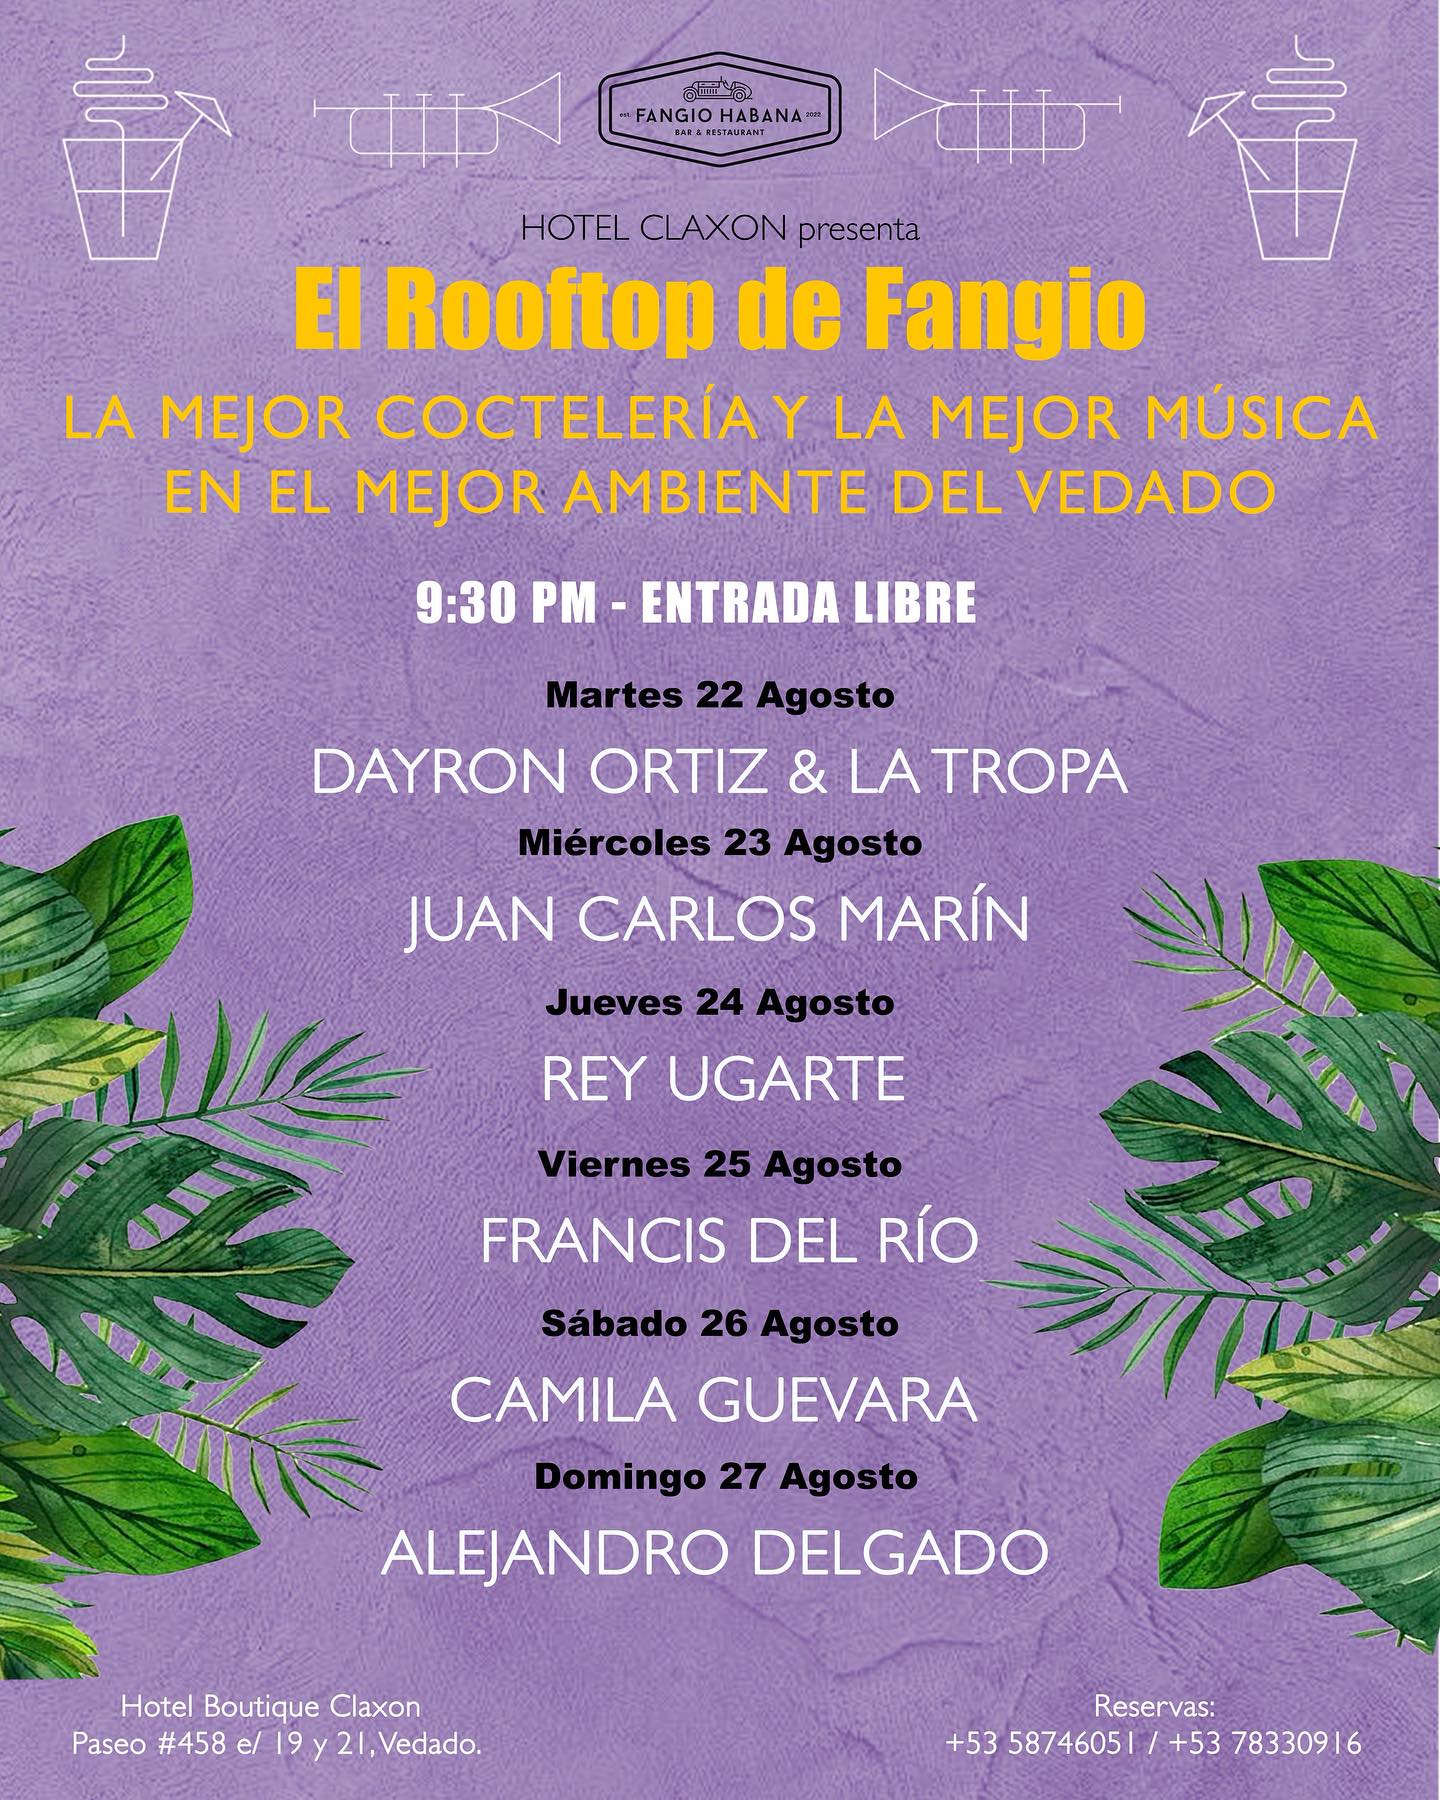 programación Fangio Habana agosto 22-27